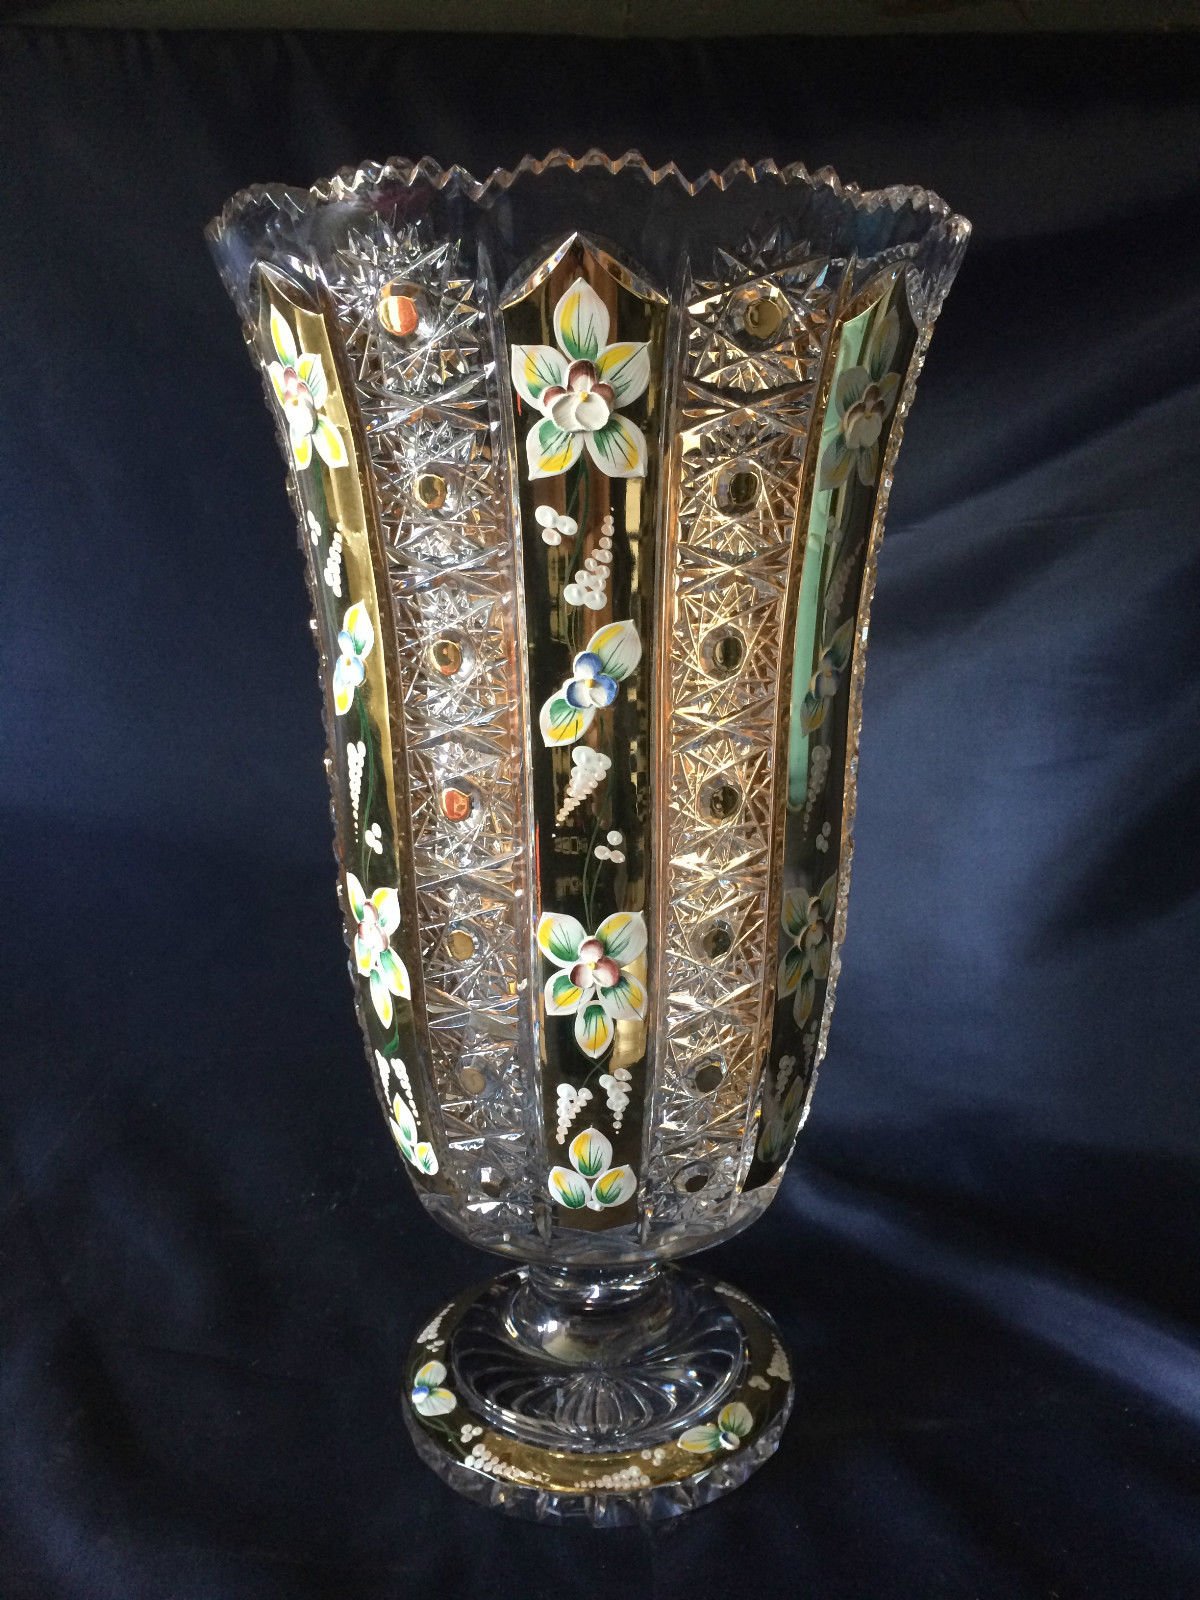 ボヘミアングラスの花瓶